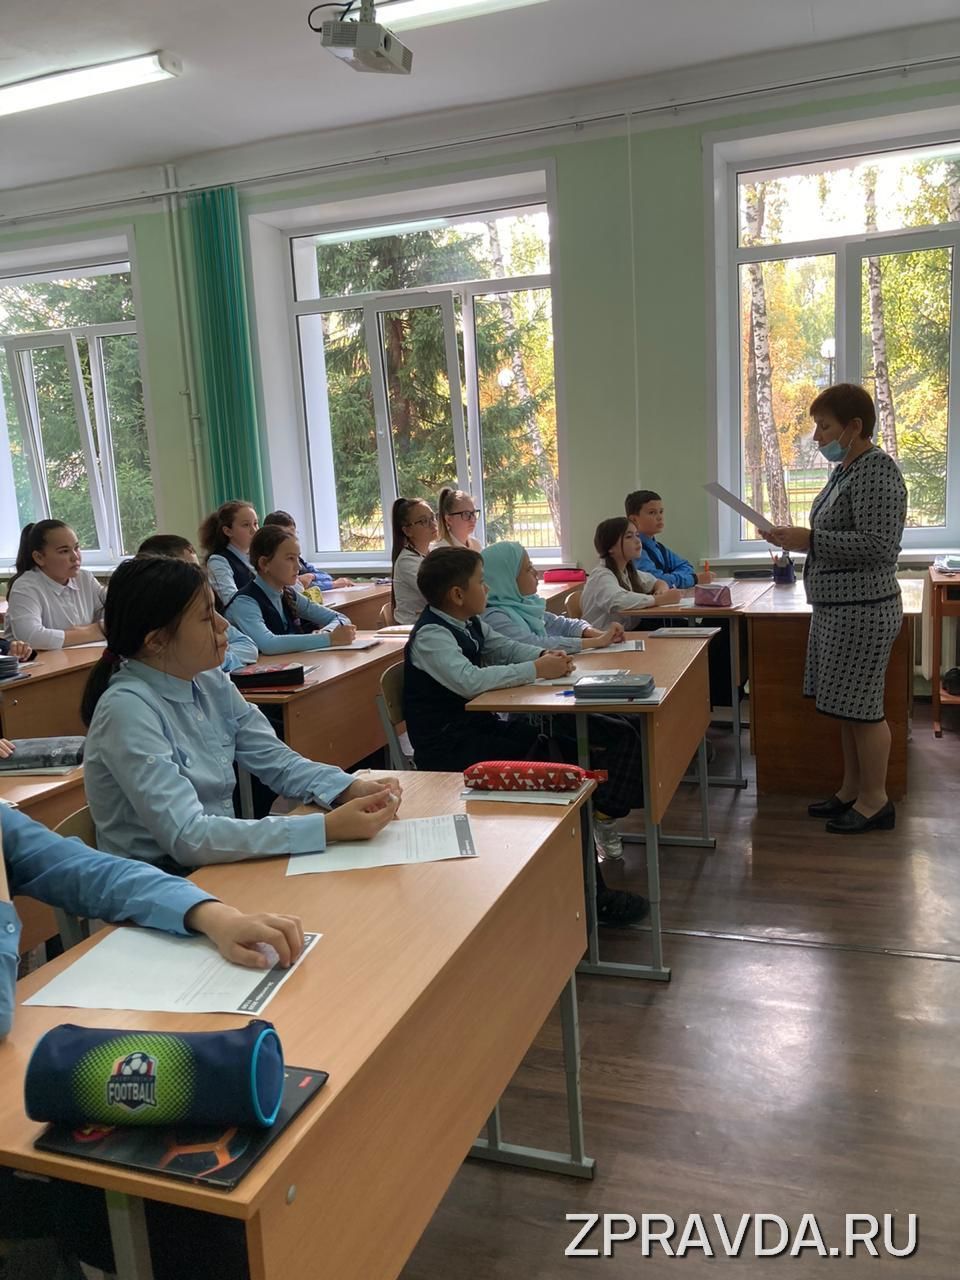 В Зеленодольском районе прошла всемирная образовательная акция по проверке грамотности на татарском языке "Татарча диктант"